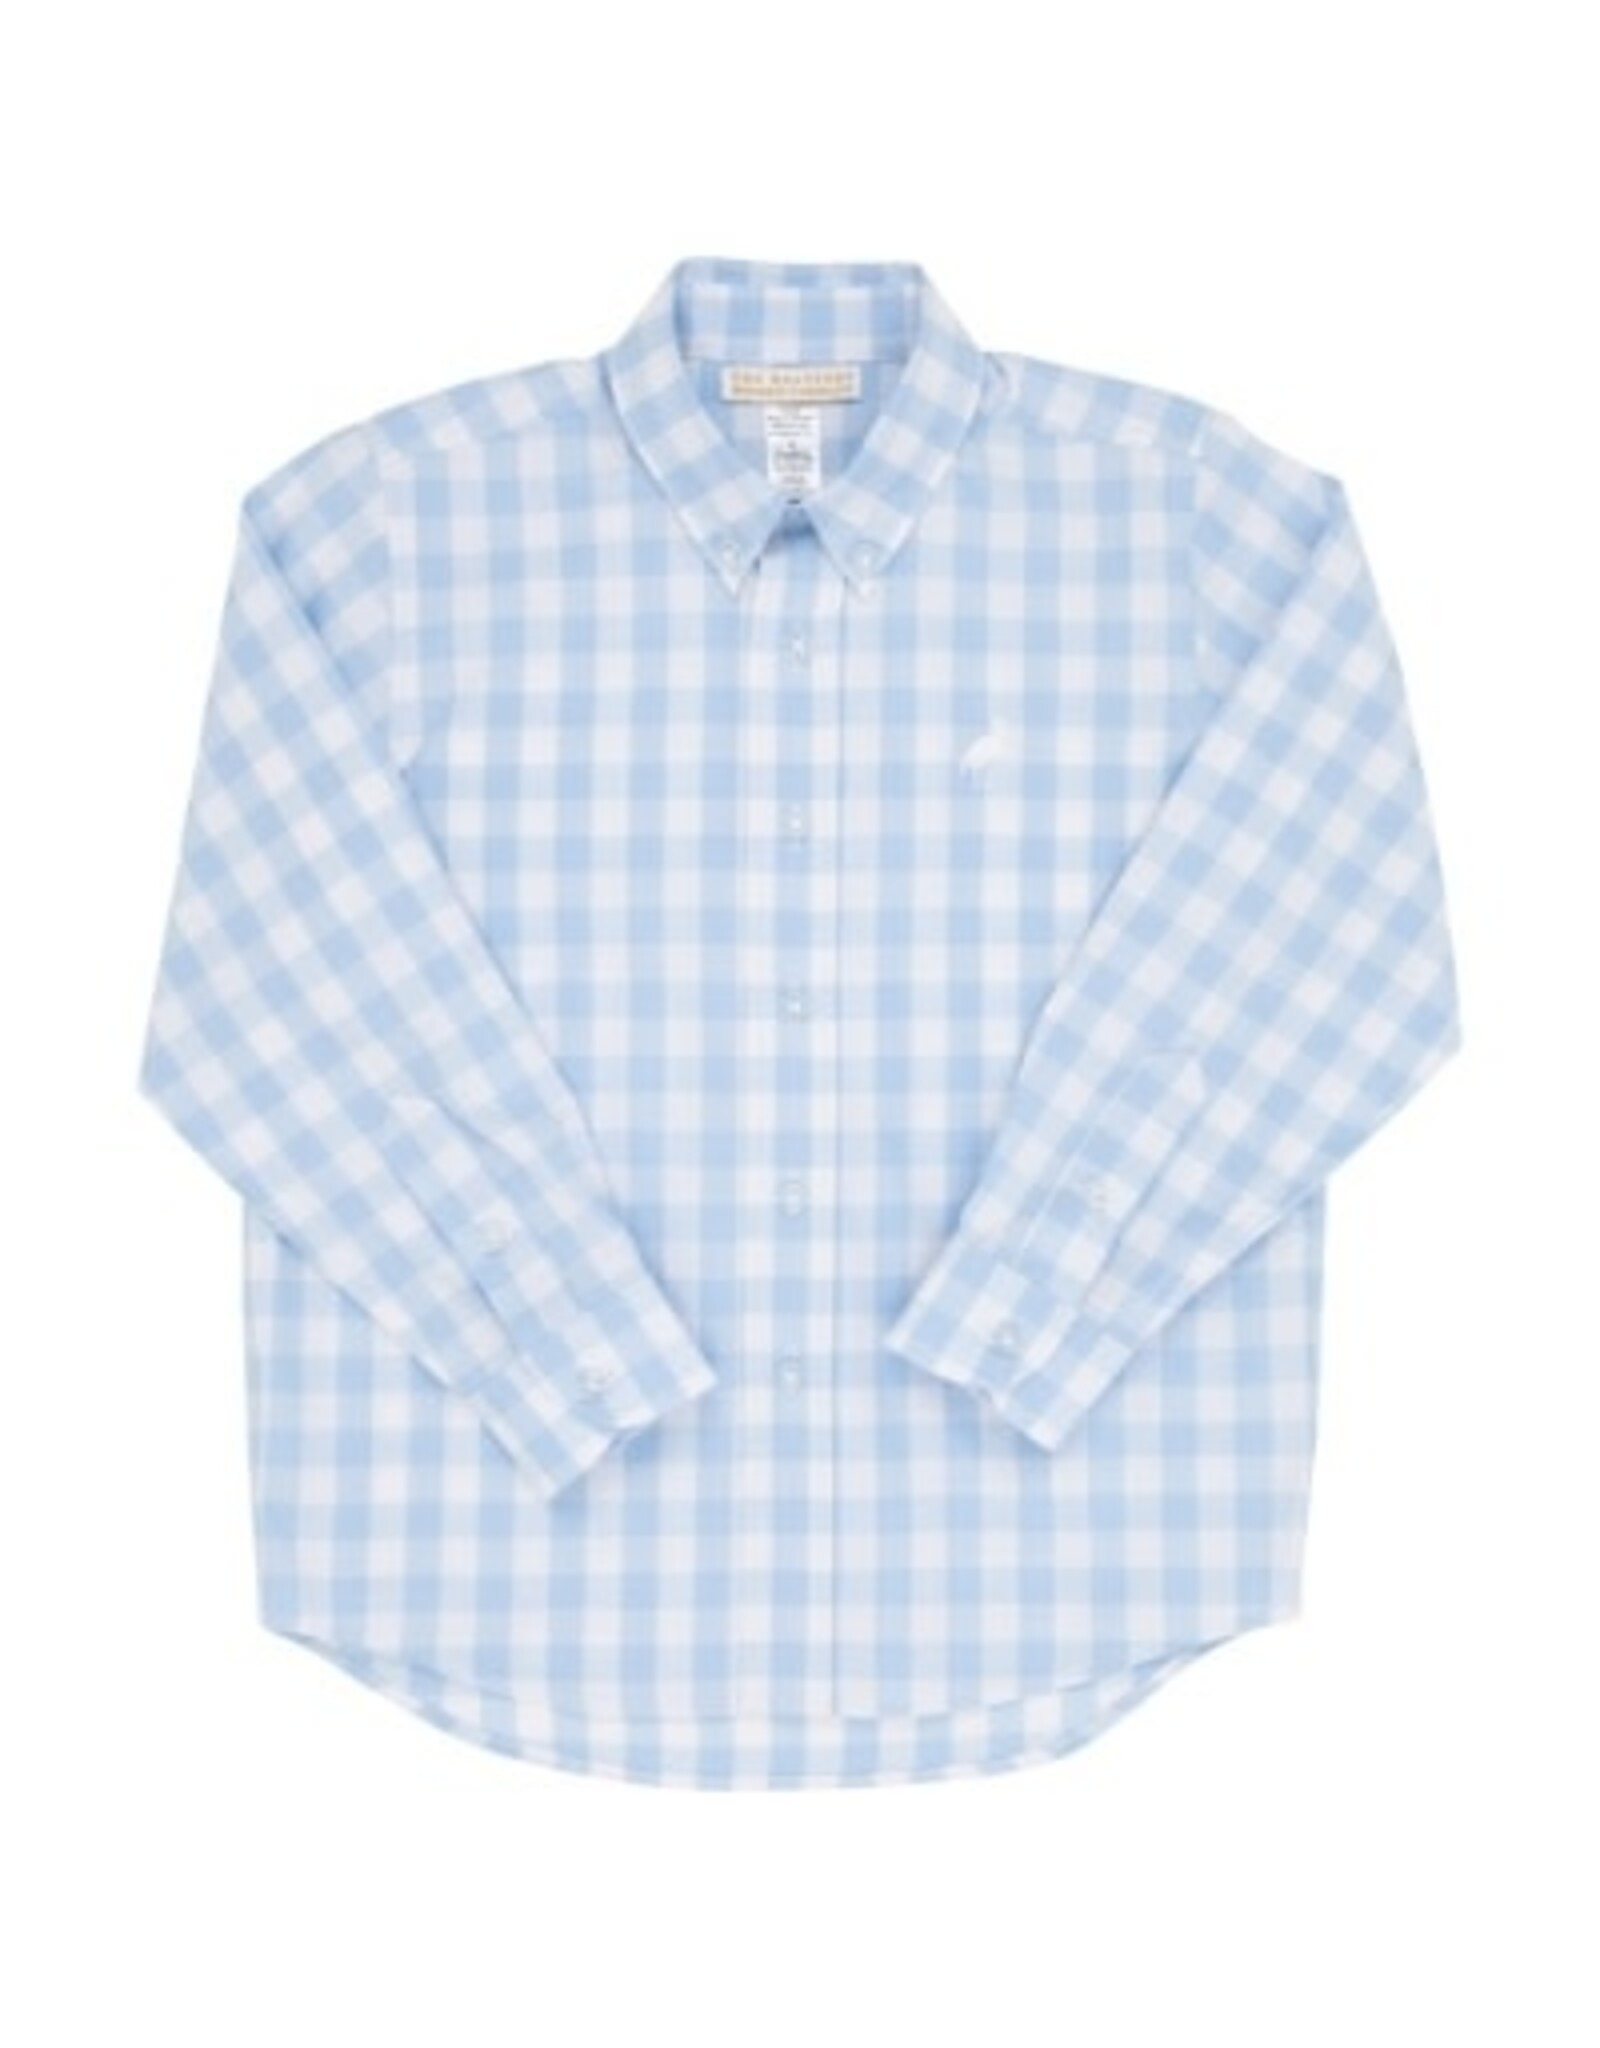 The Beaufort Bonnet Company Dean`s List Dress Shirt Beale Street Blue Check